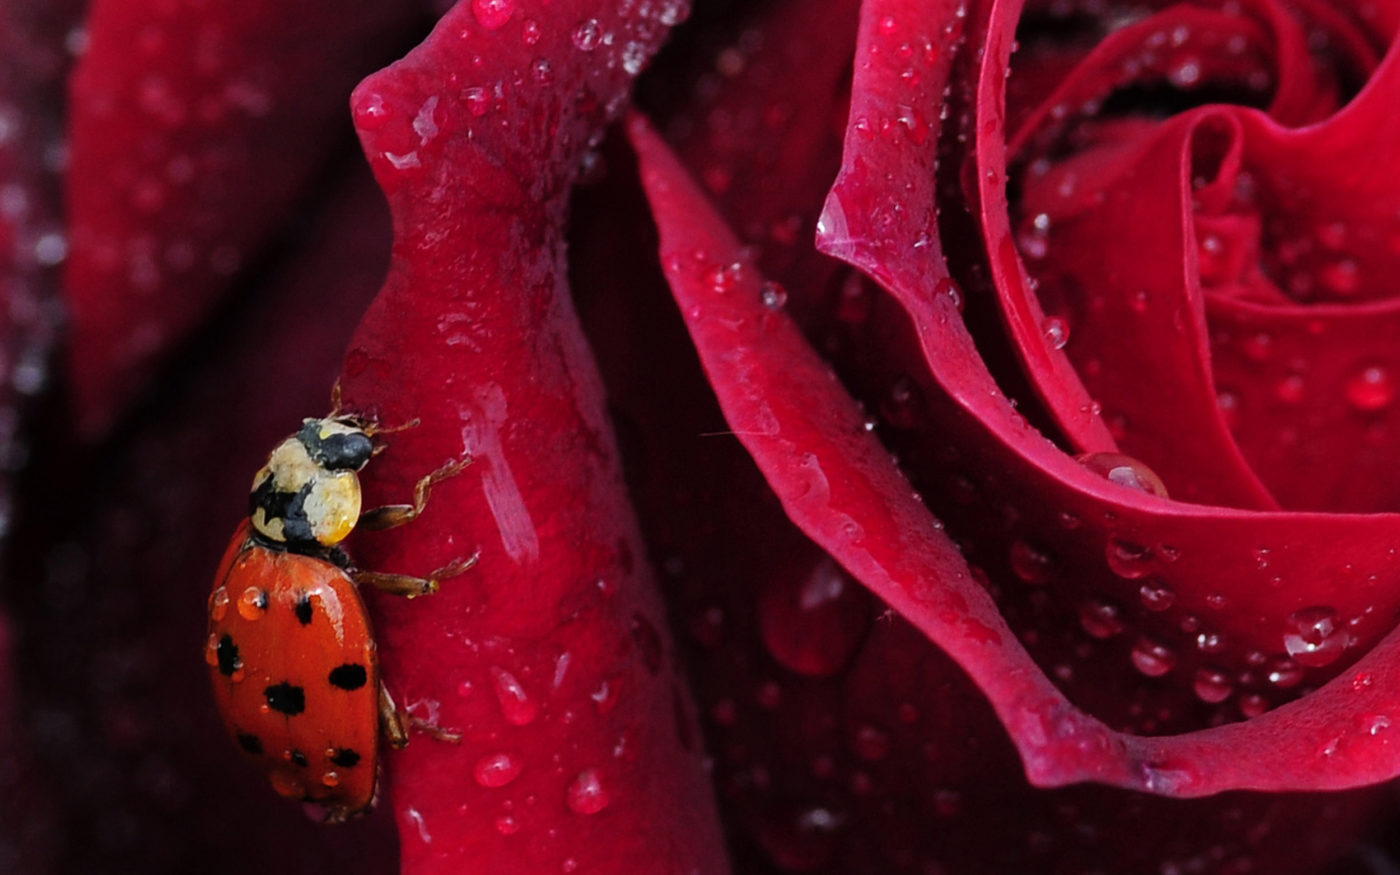 Harlequin Ladybird, Harmonia Axyridis, on a red rose petal